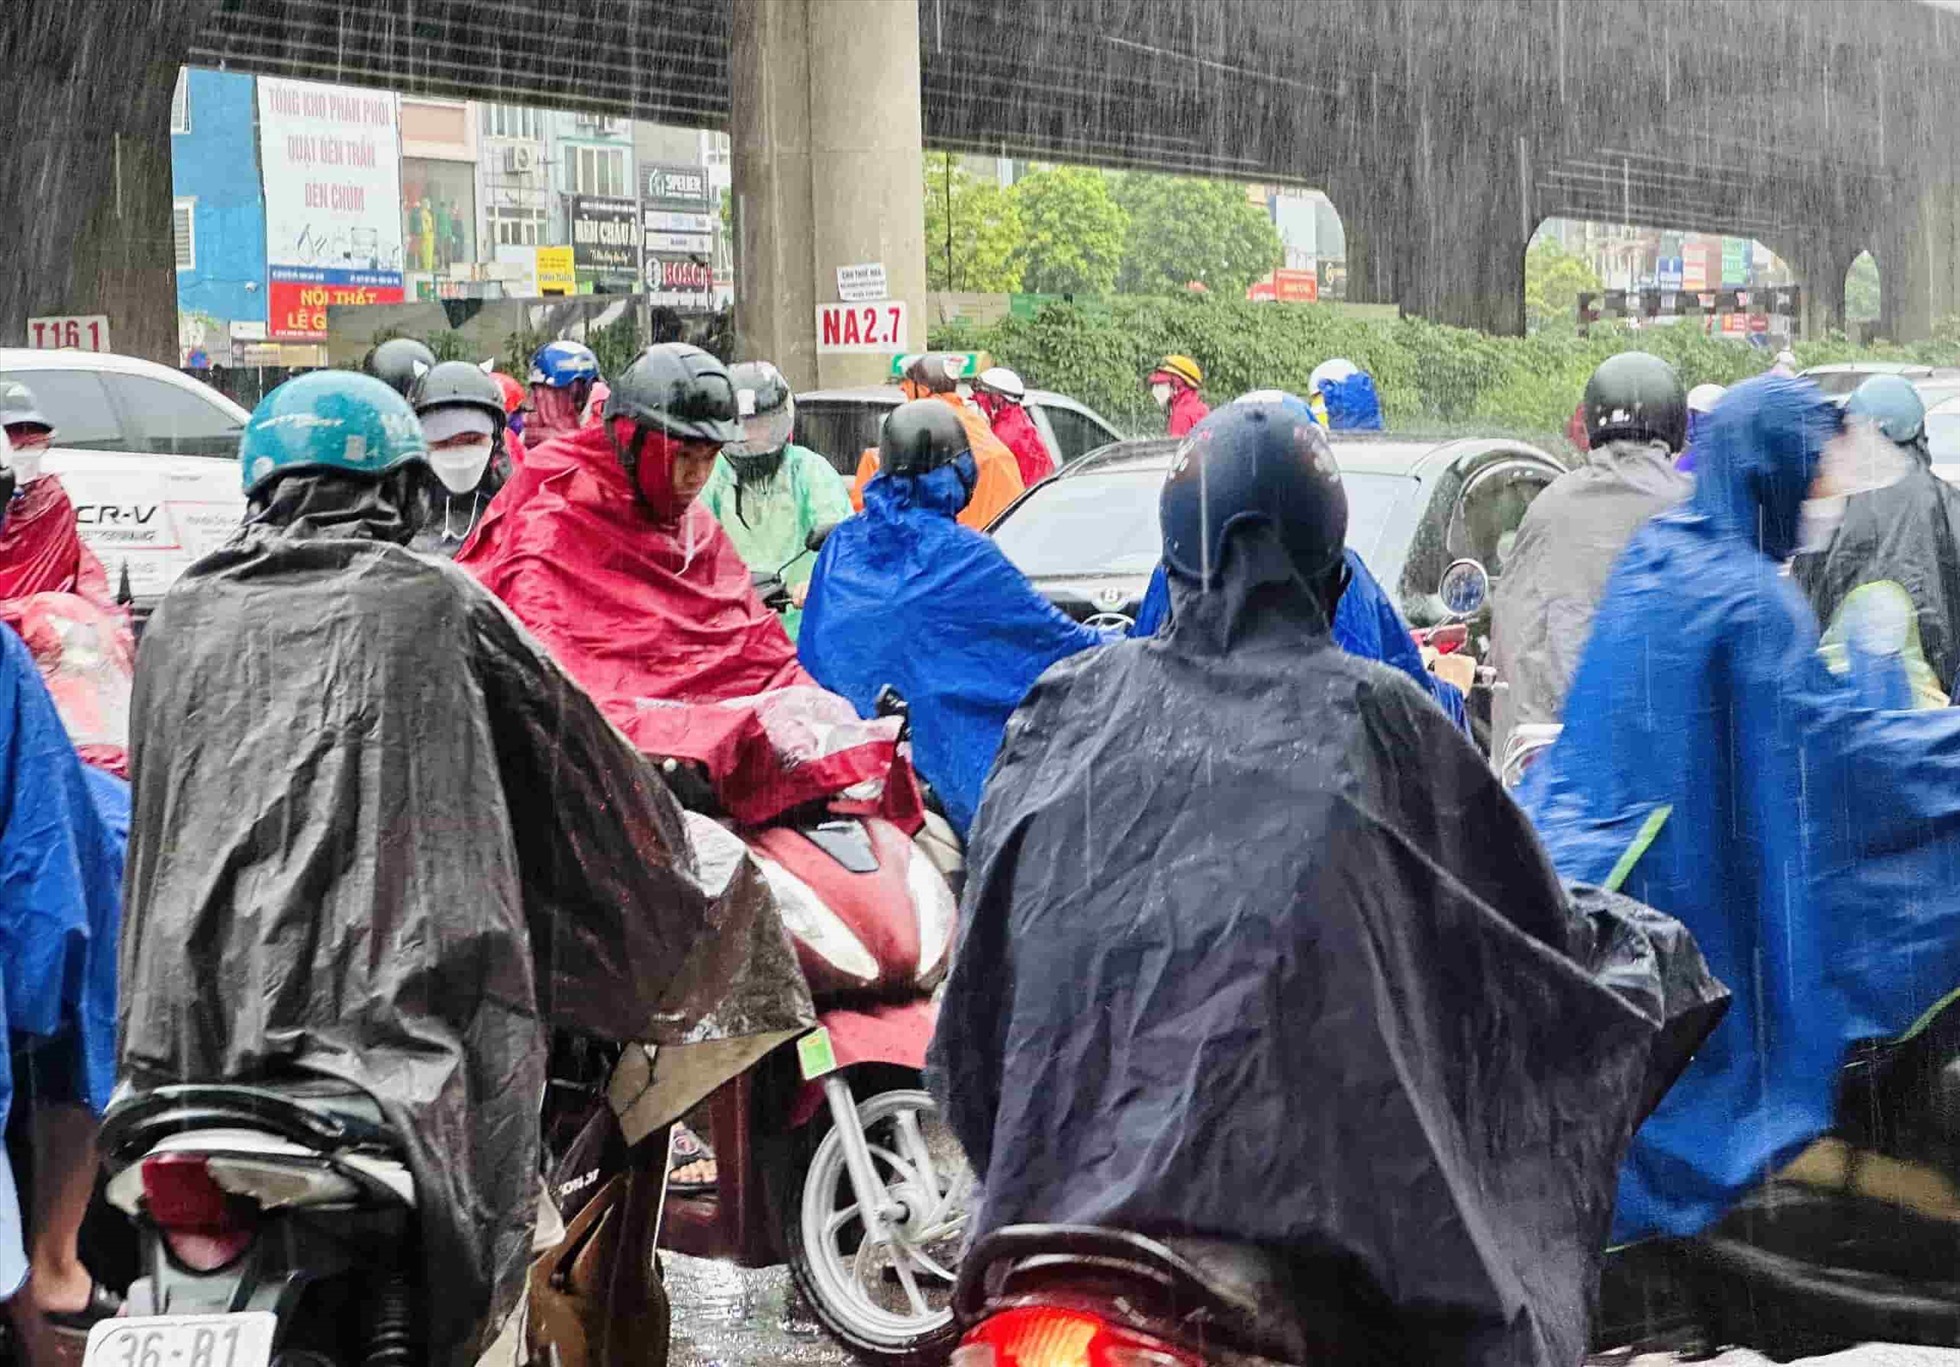 Ghi nhận tại đường Nguyễn Xiển (Thanh Xuân), thời điểm 8h30, ùn tắc kéo dài gần 1km. Mưa lớn khiến việc di chuyển của người dân thêm khó khăn. Nhiều người dân phải di chuyển lên vỉa hè. Với nhiều người, đây là nỗi ám ảnh mỗi khi trời mưa lớn